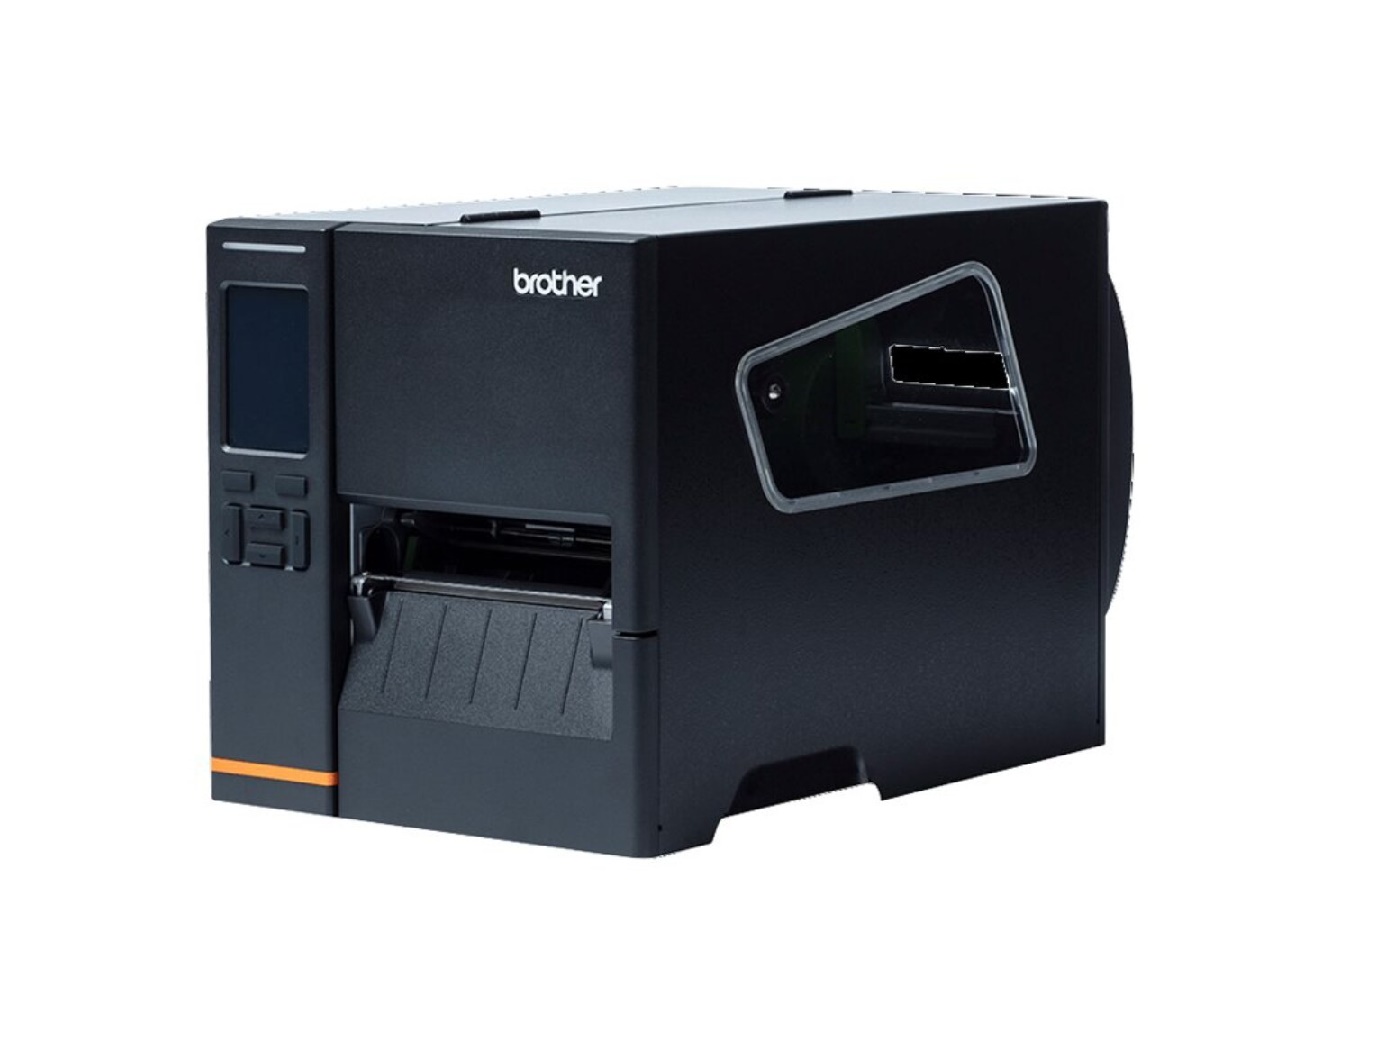 Brother Titan TJ-4121TN Industrial Printer Label Printer B/W Direct Thermal/Thermal Transfer TJ4121TN